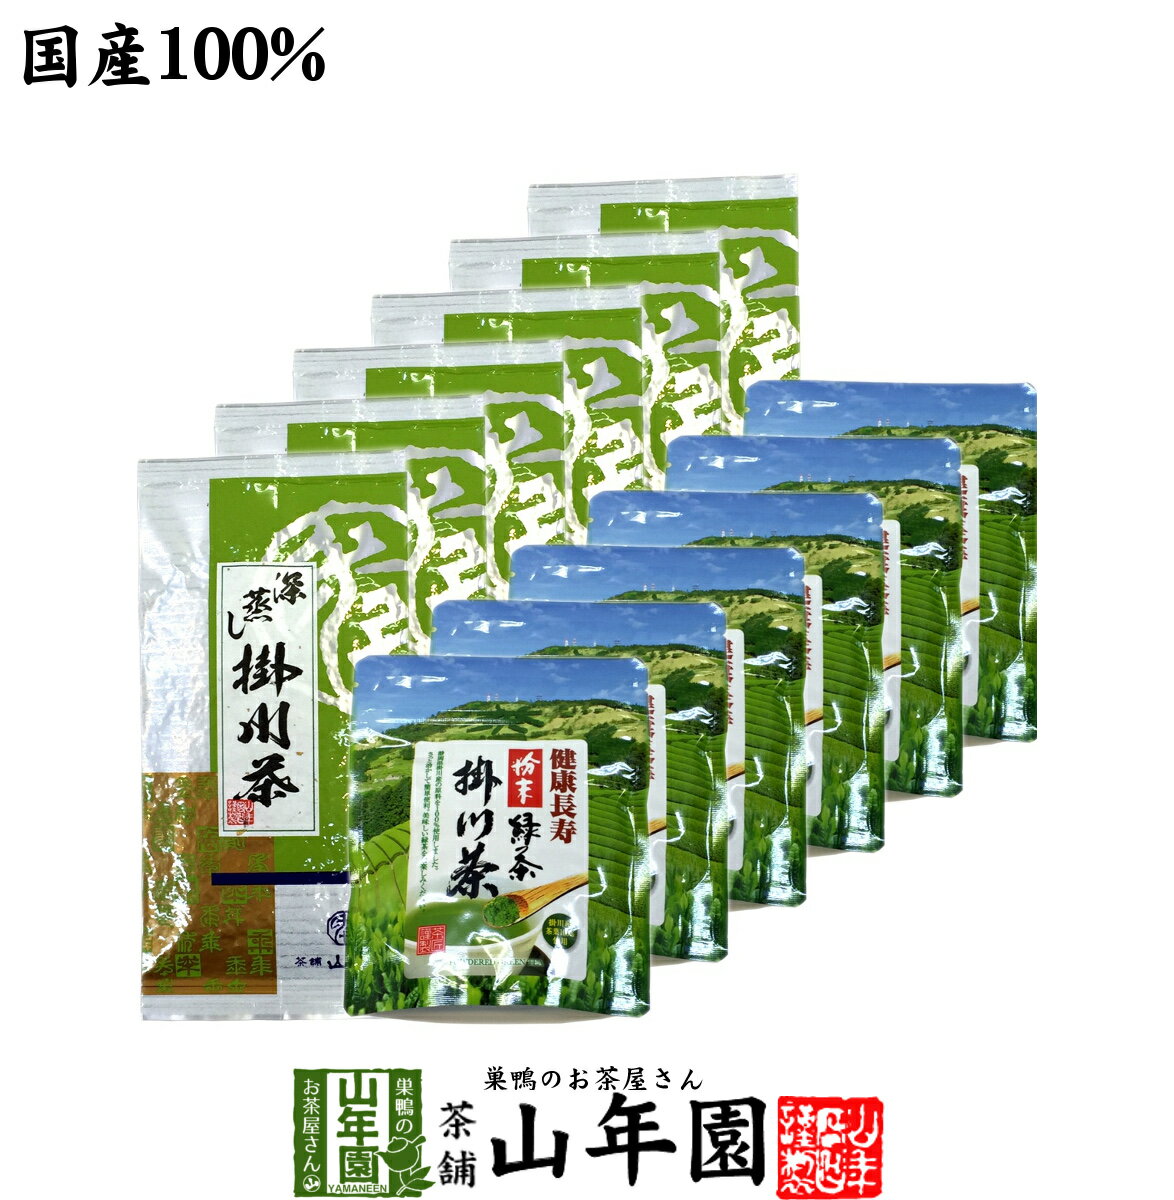 【掛川茶】掛川深蒸し茶+掛川粉末茶セット 12袋セット(60